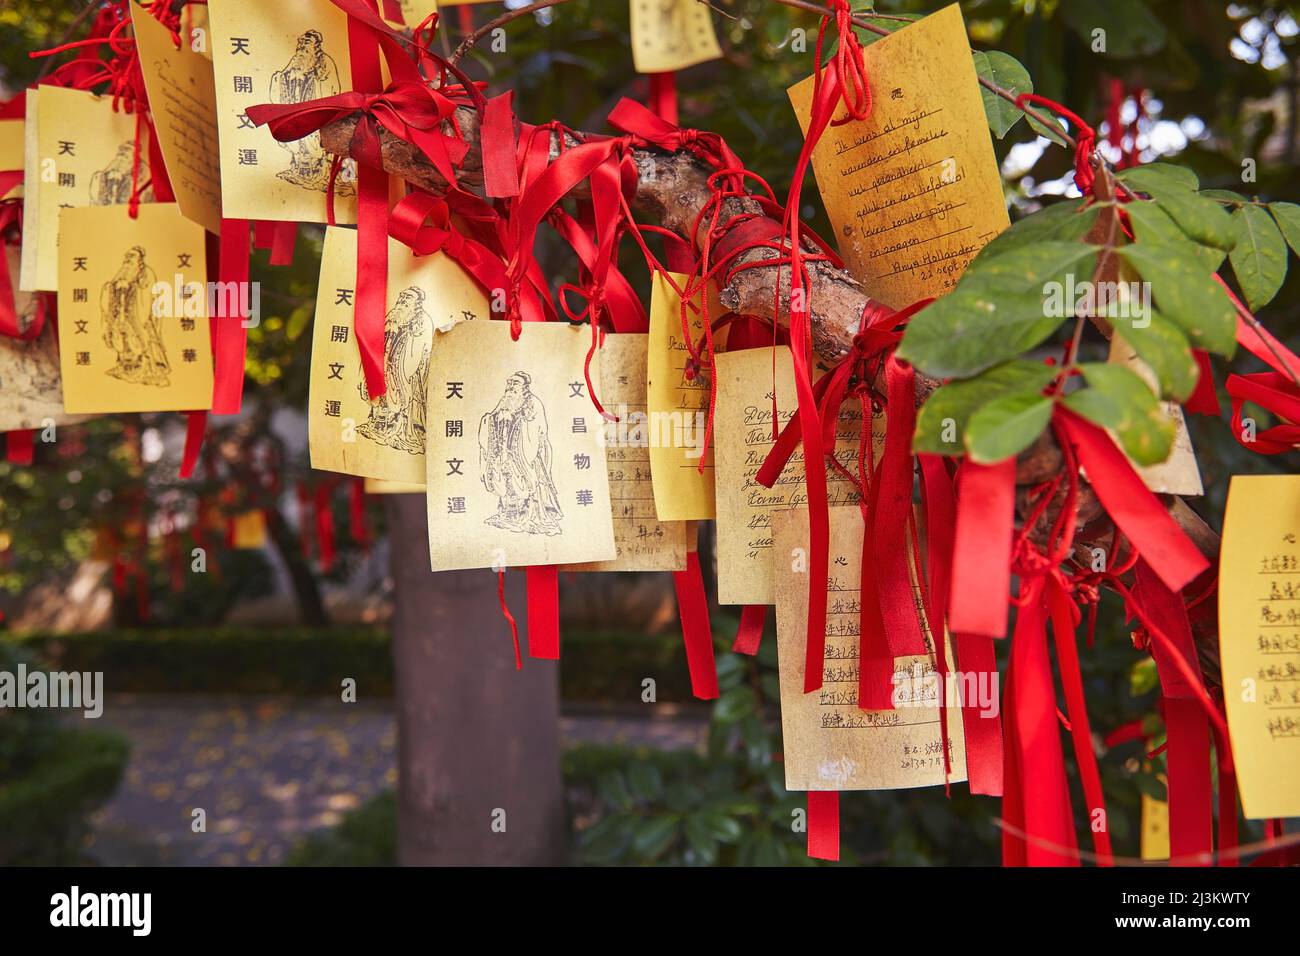 Bonne chance souhaite lié à un arbre dans le Temple confucianiste, Shanghai, Chine.; Nanshi, vieille ville, Shanghai, Chine. Banque D'Images